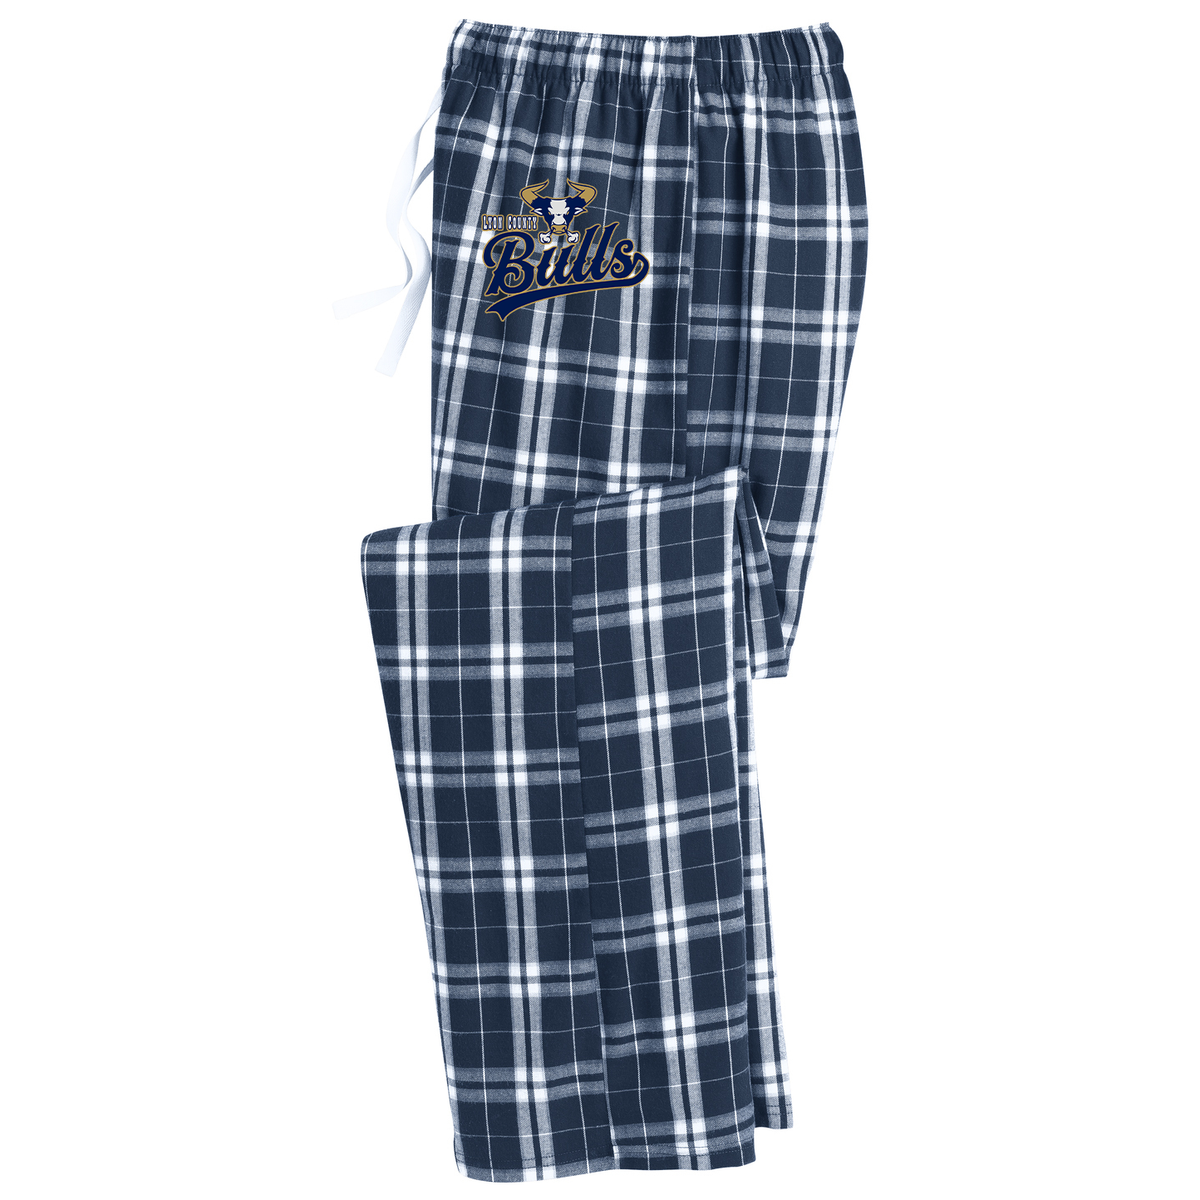 Lyon County Baseball Plaid Pajama Pants